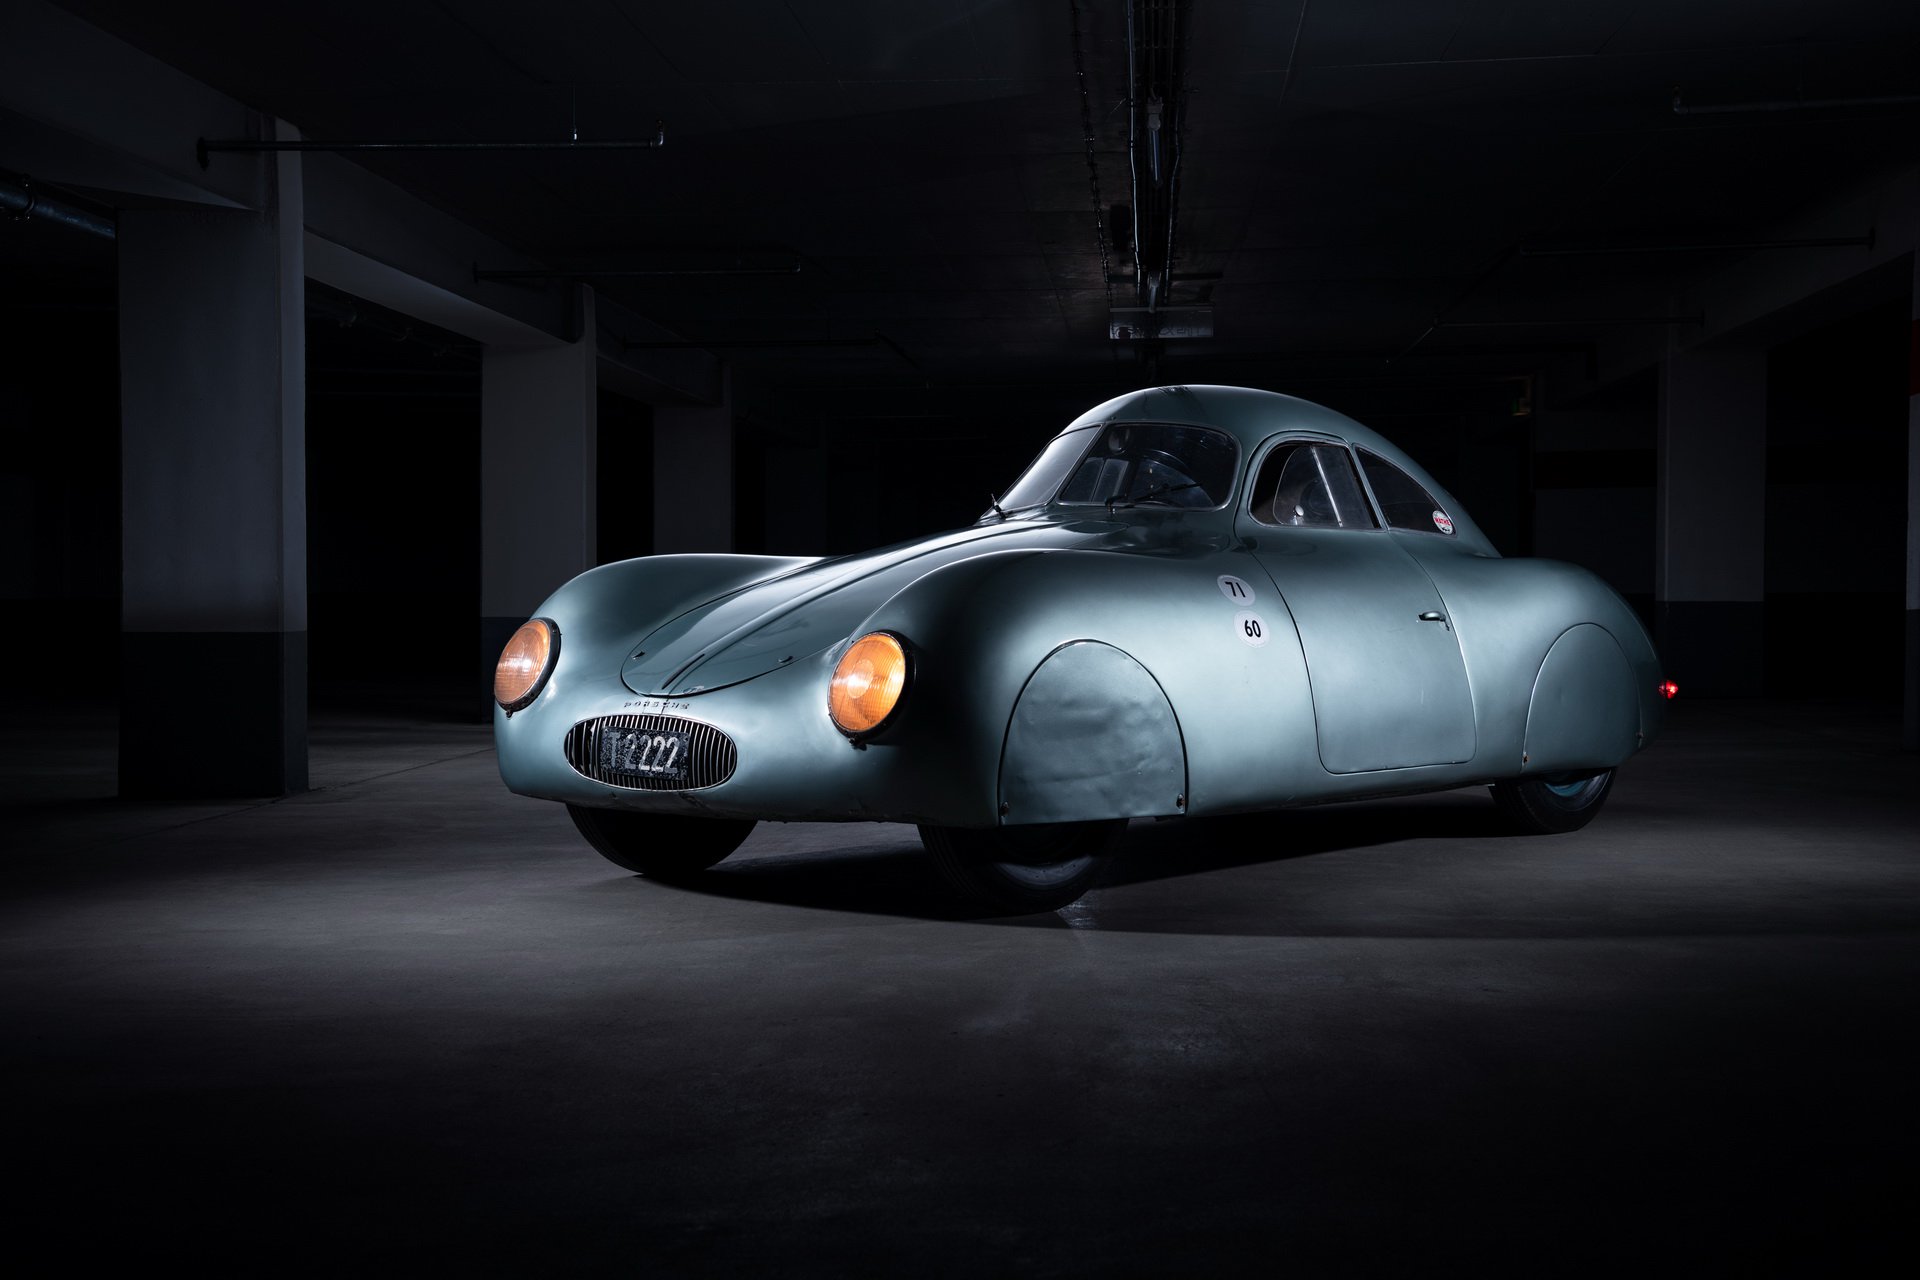 На аукцион выставлен самый первый Porsche в истории